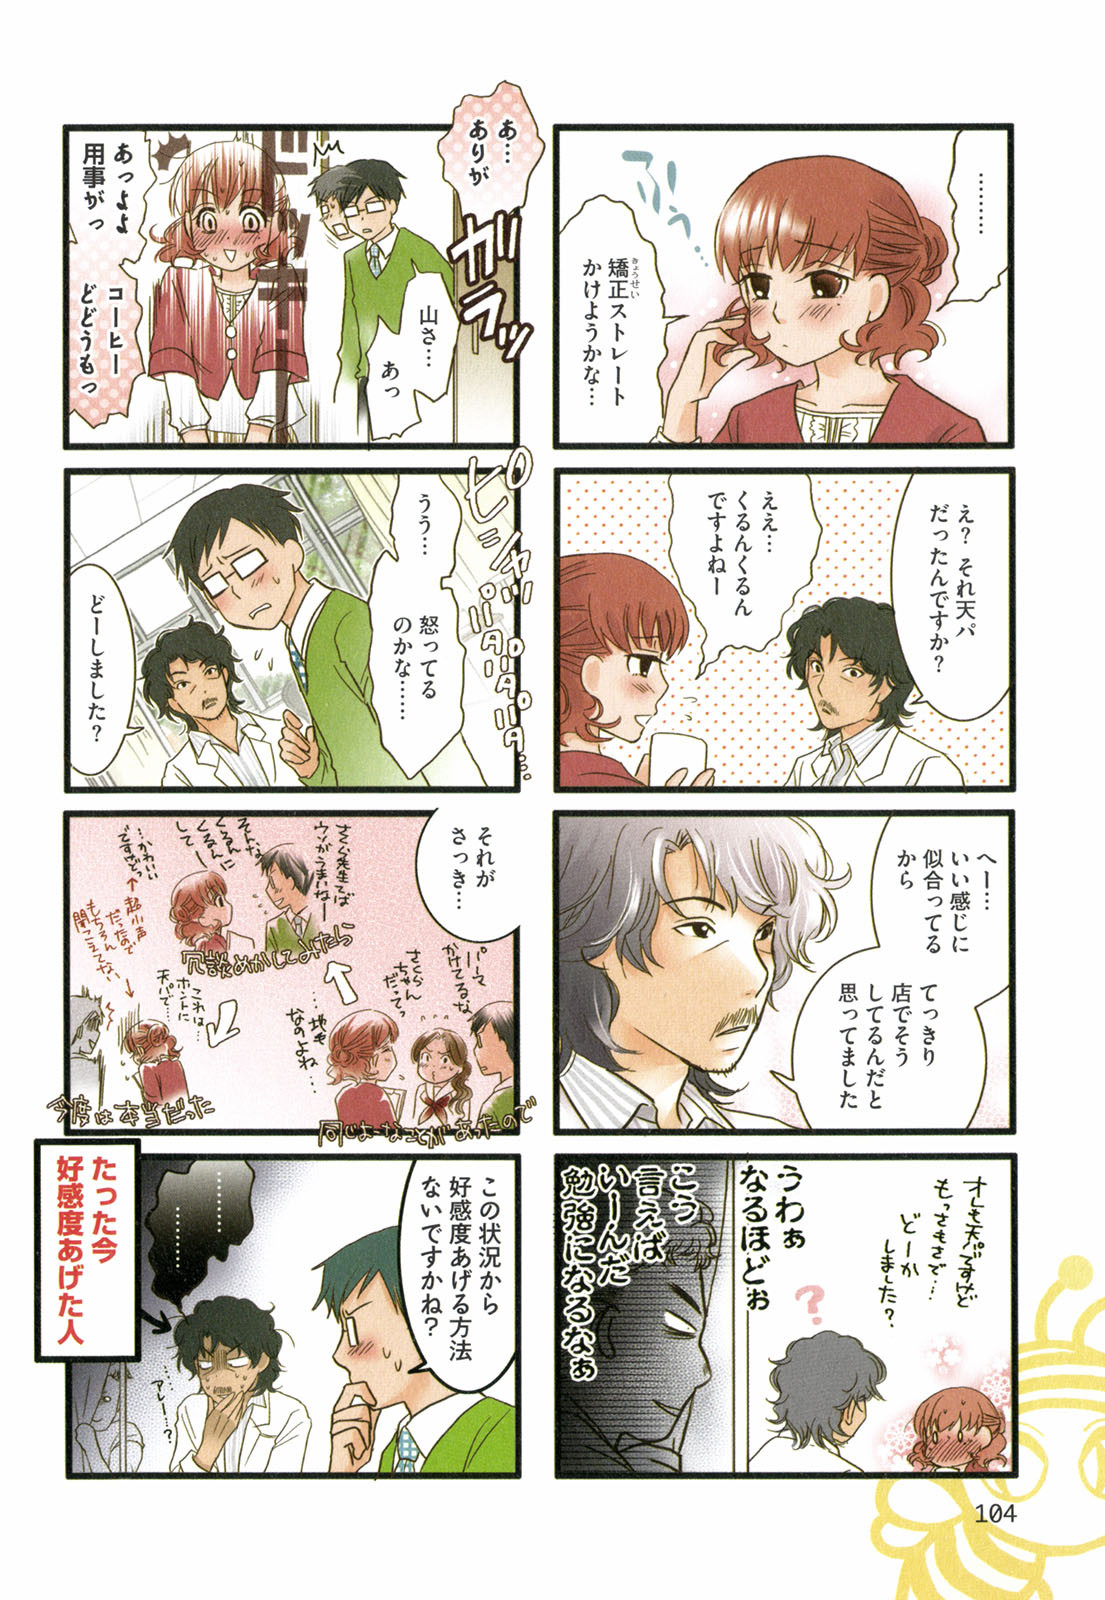 Tonari No Neneko San となりのネネコさん Chapter Volume 02 Page 105 Raw Sen Manga